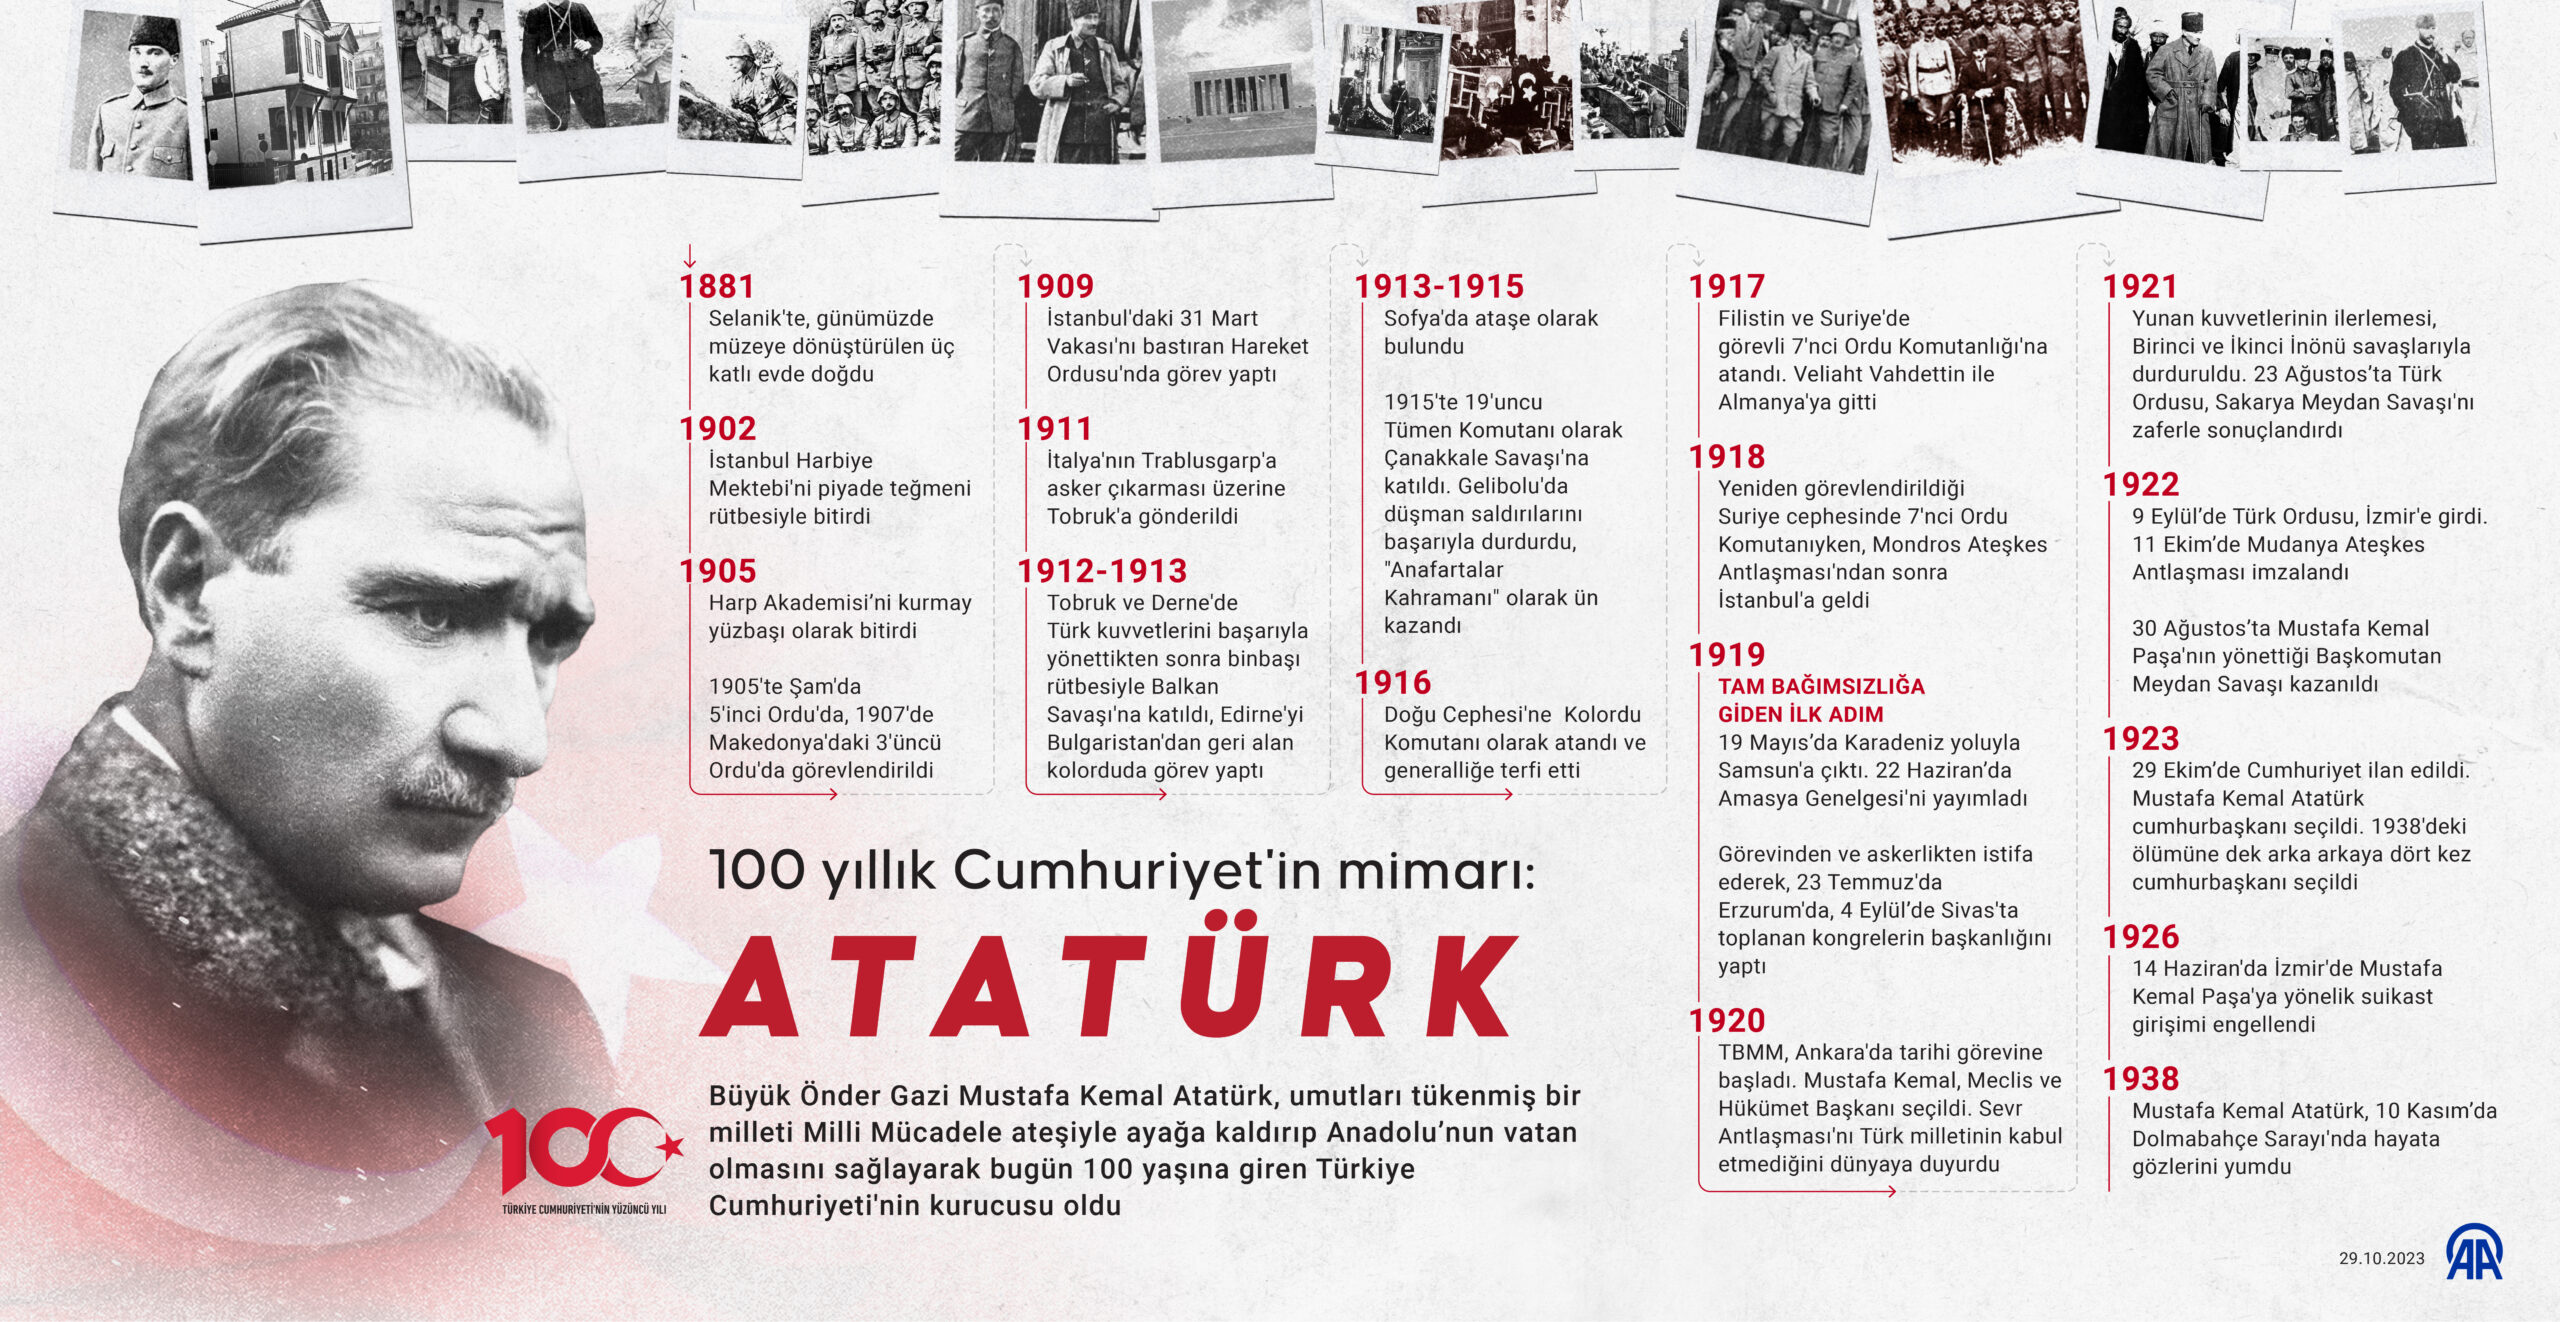 100 yıllık Cumhuriyet’in mimarı Büyük Önder Gazi Mustafa Kemal Atatürk